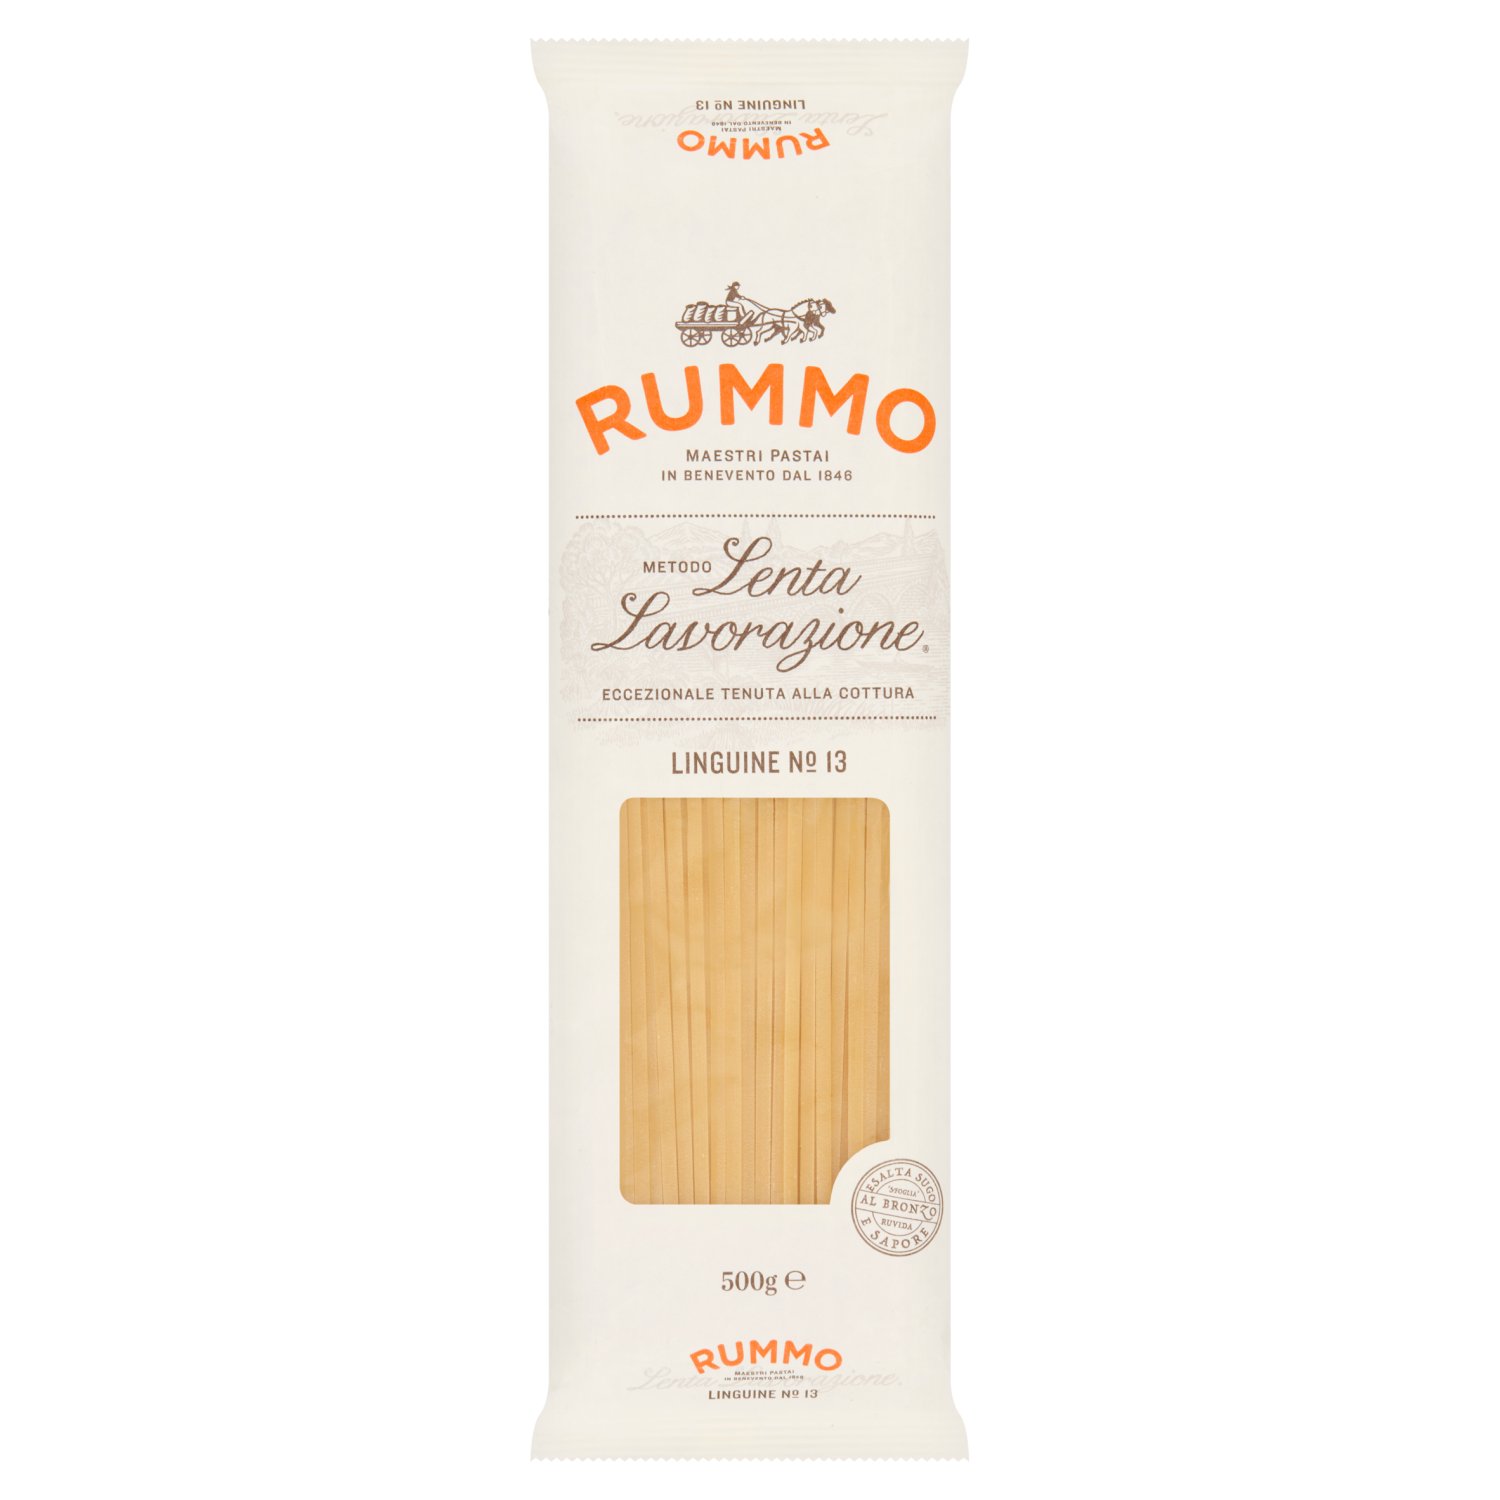 Rummo Liguine Pasta (500 g)